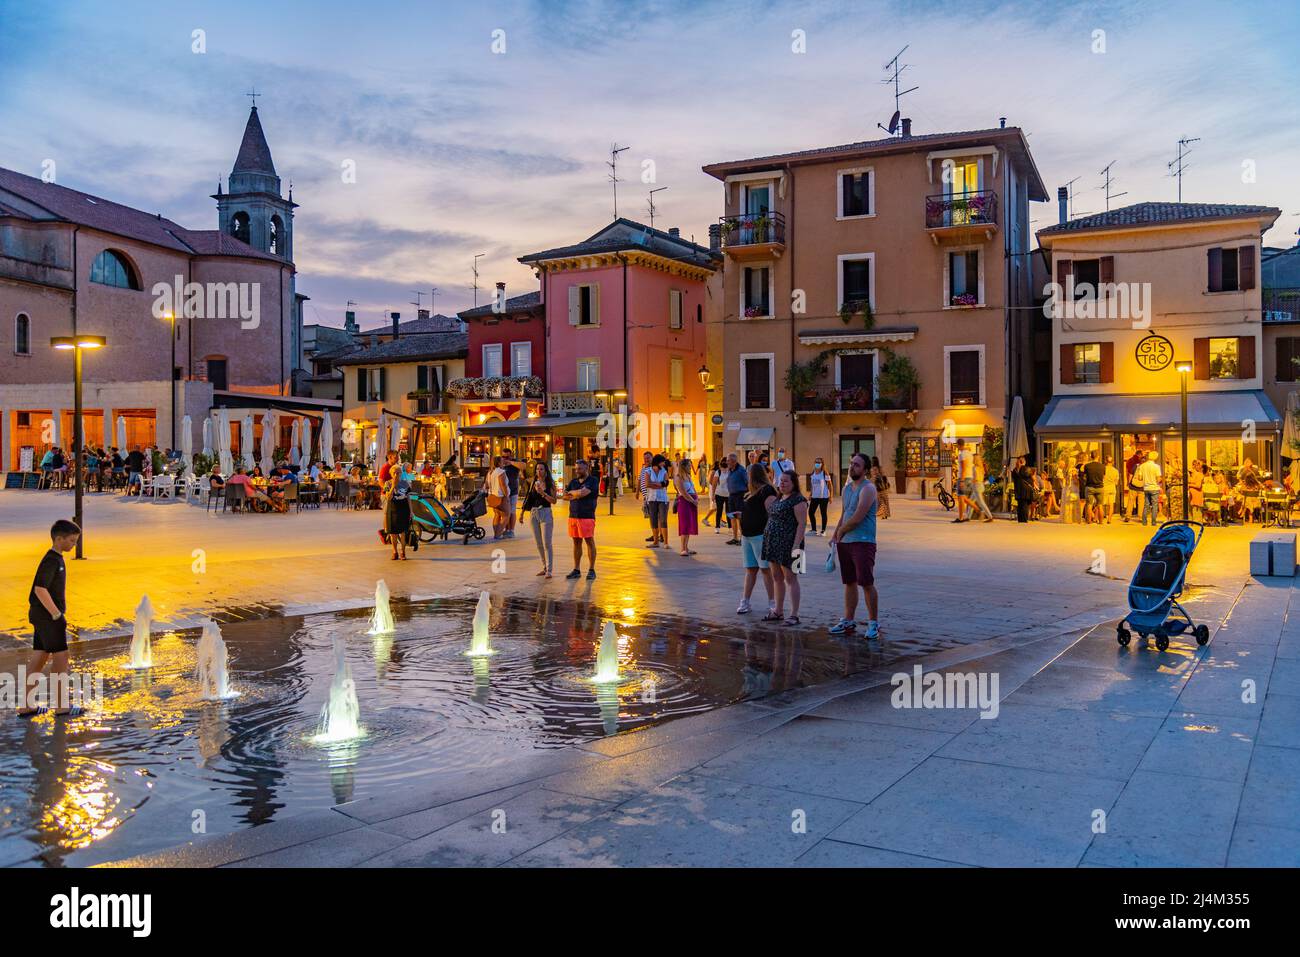 Peschiera del Garda, Italy, August 26, 2021: Ferdinando di Savoia square in Italian town Peschiera del Garda. Stock Photo